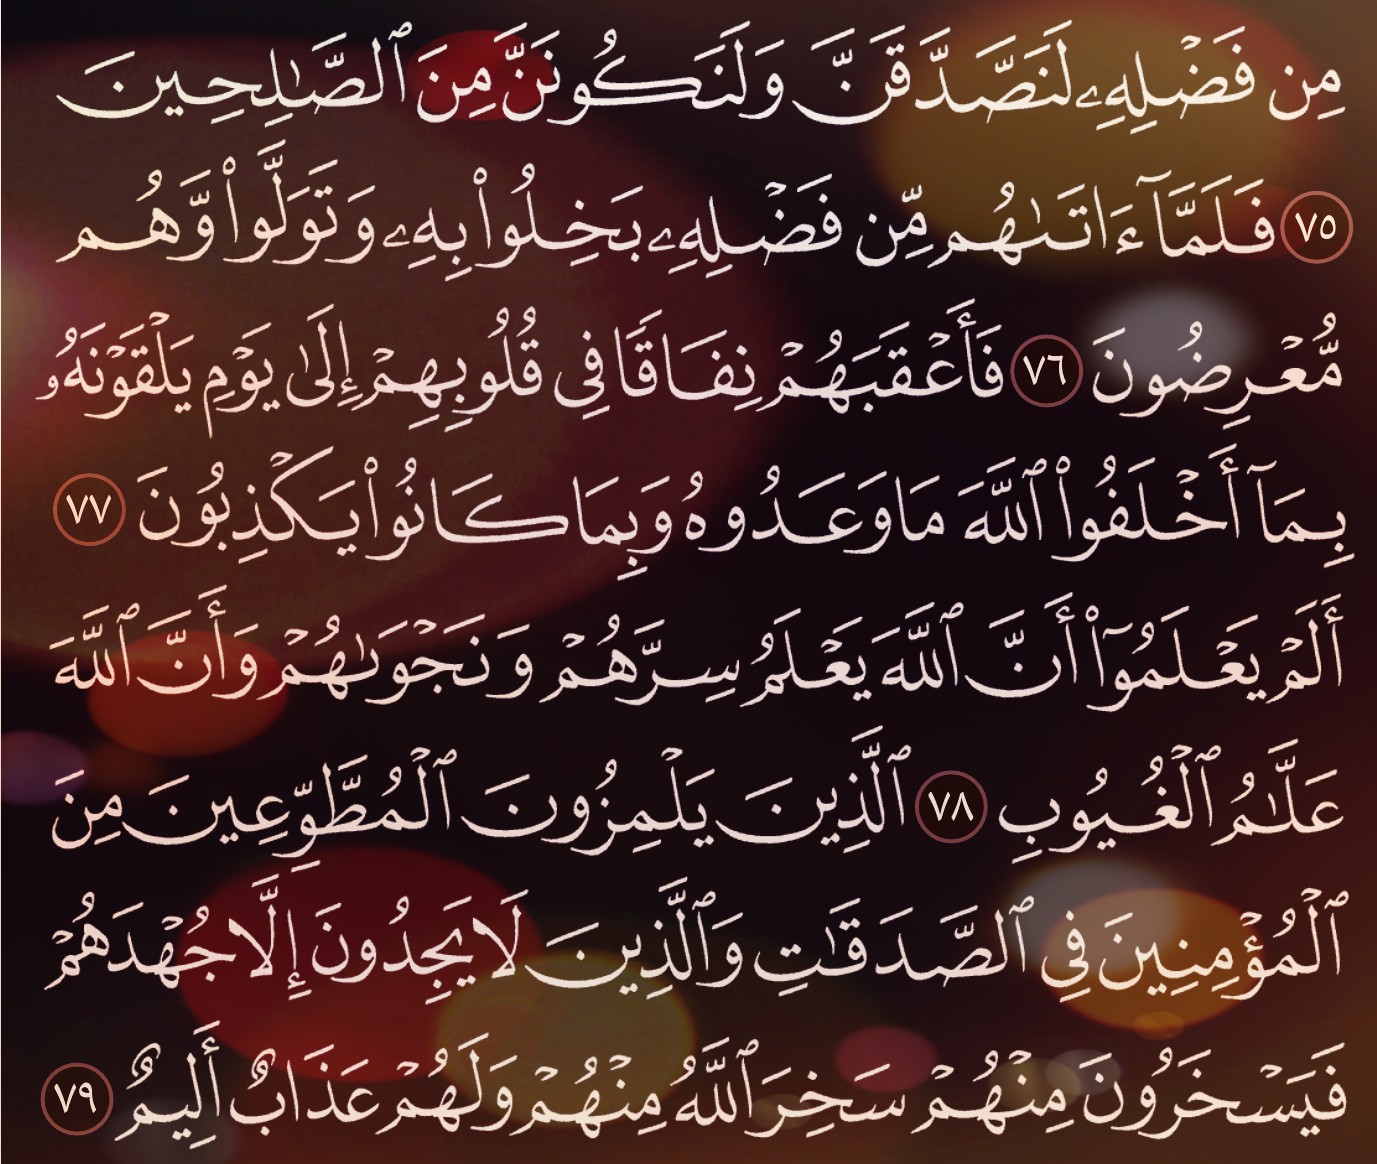 شرح وتفسير, سورة التوبة, Surah At-Tawbah, من الآية 73, إلى الاية 82,